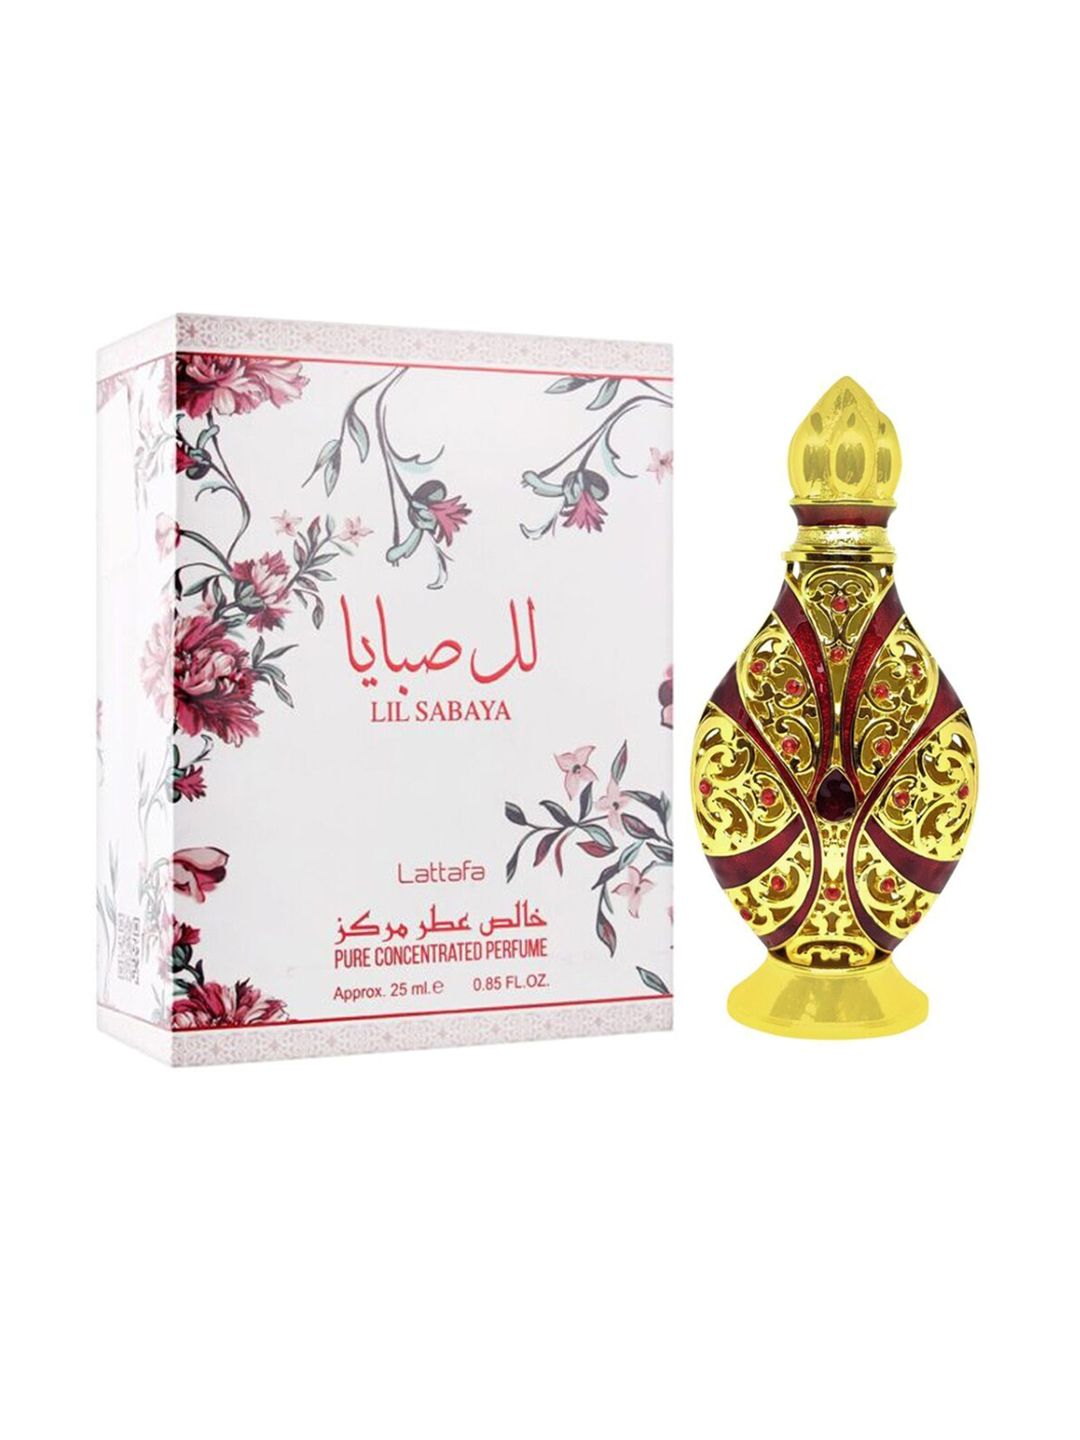 Lattafa Lil Sabaya Imported Long Lasting Premium Eau De Parfum Attar 25ml Price in India